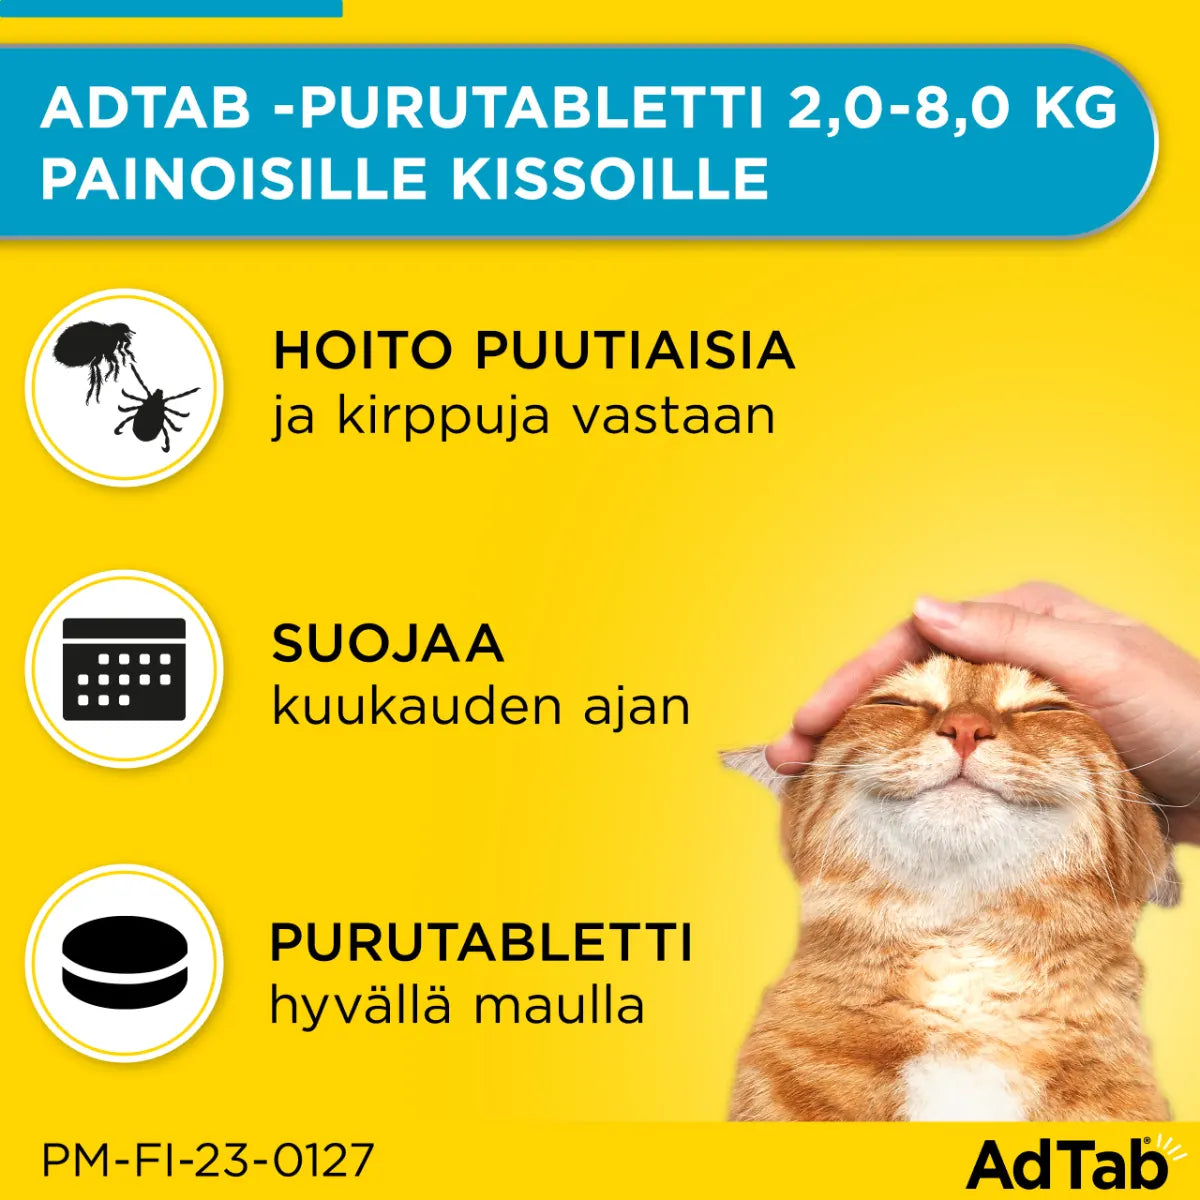 ADTAB 48 mg vet purutabletti kissoille yli 2-8 kg 3 kpl hoitaa ja suojaa